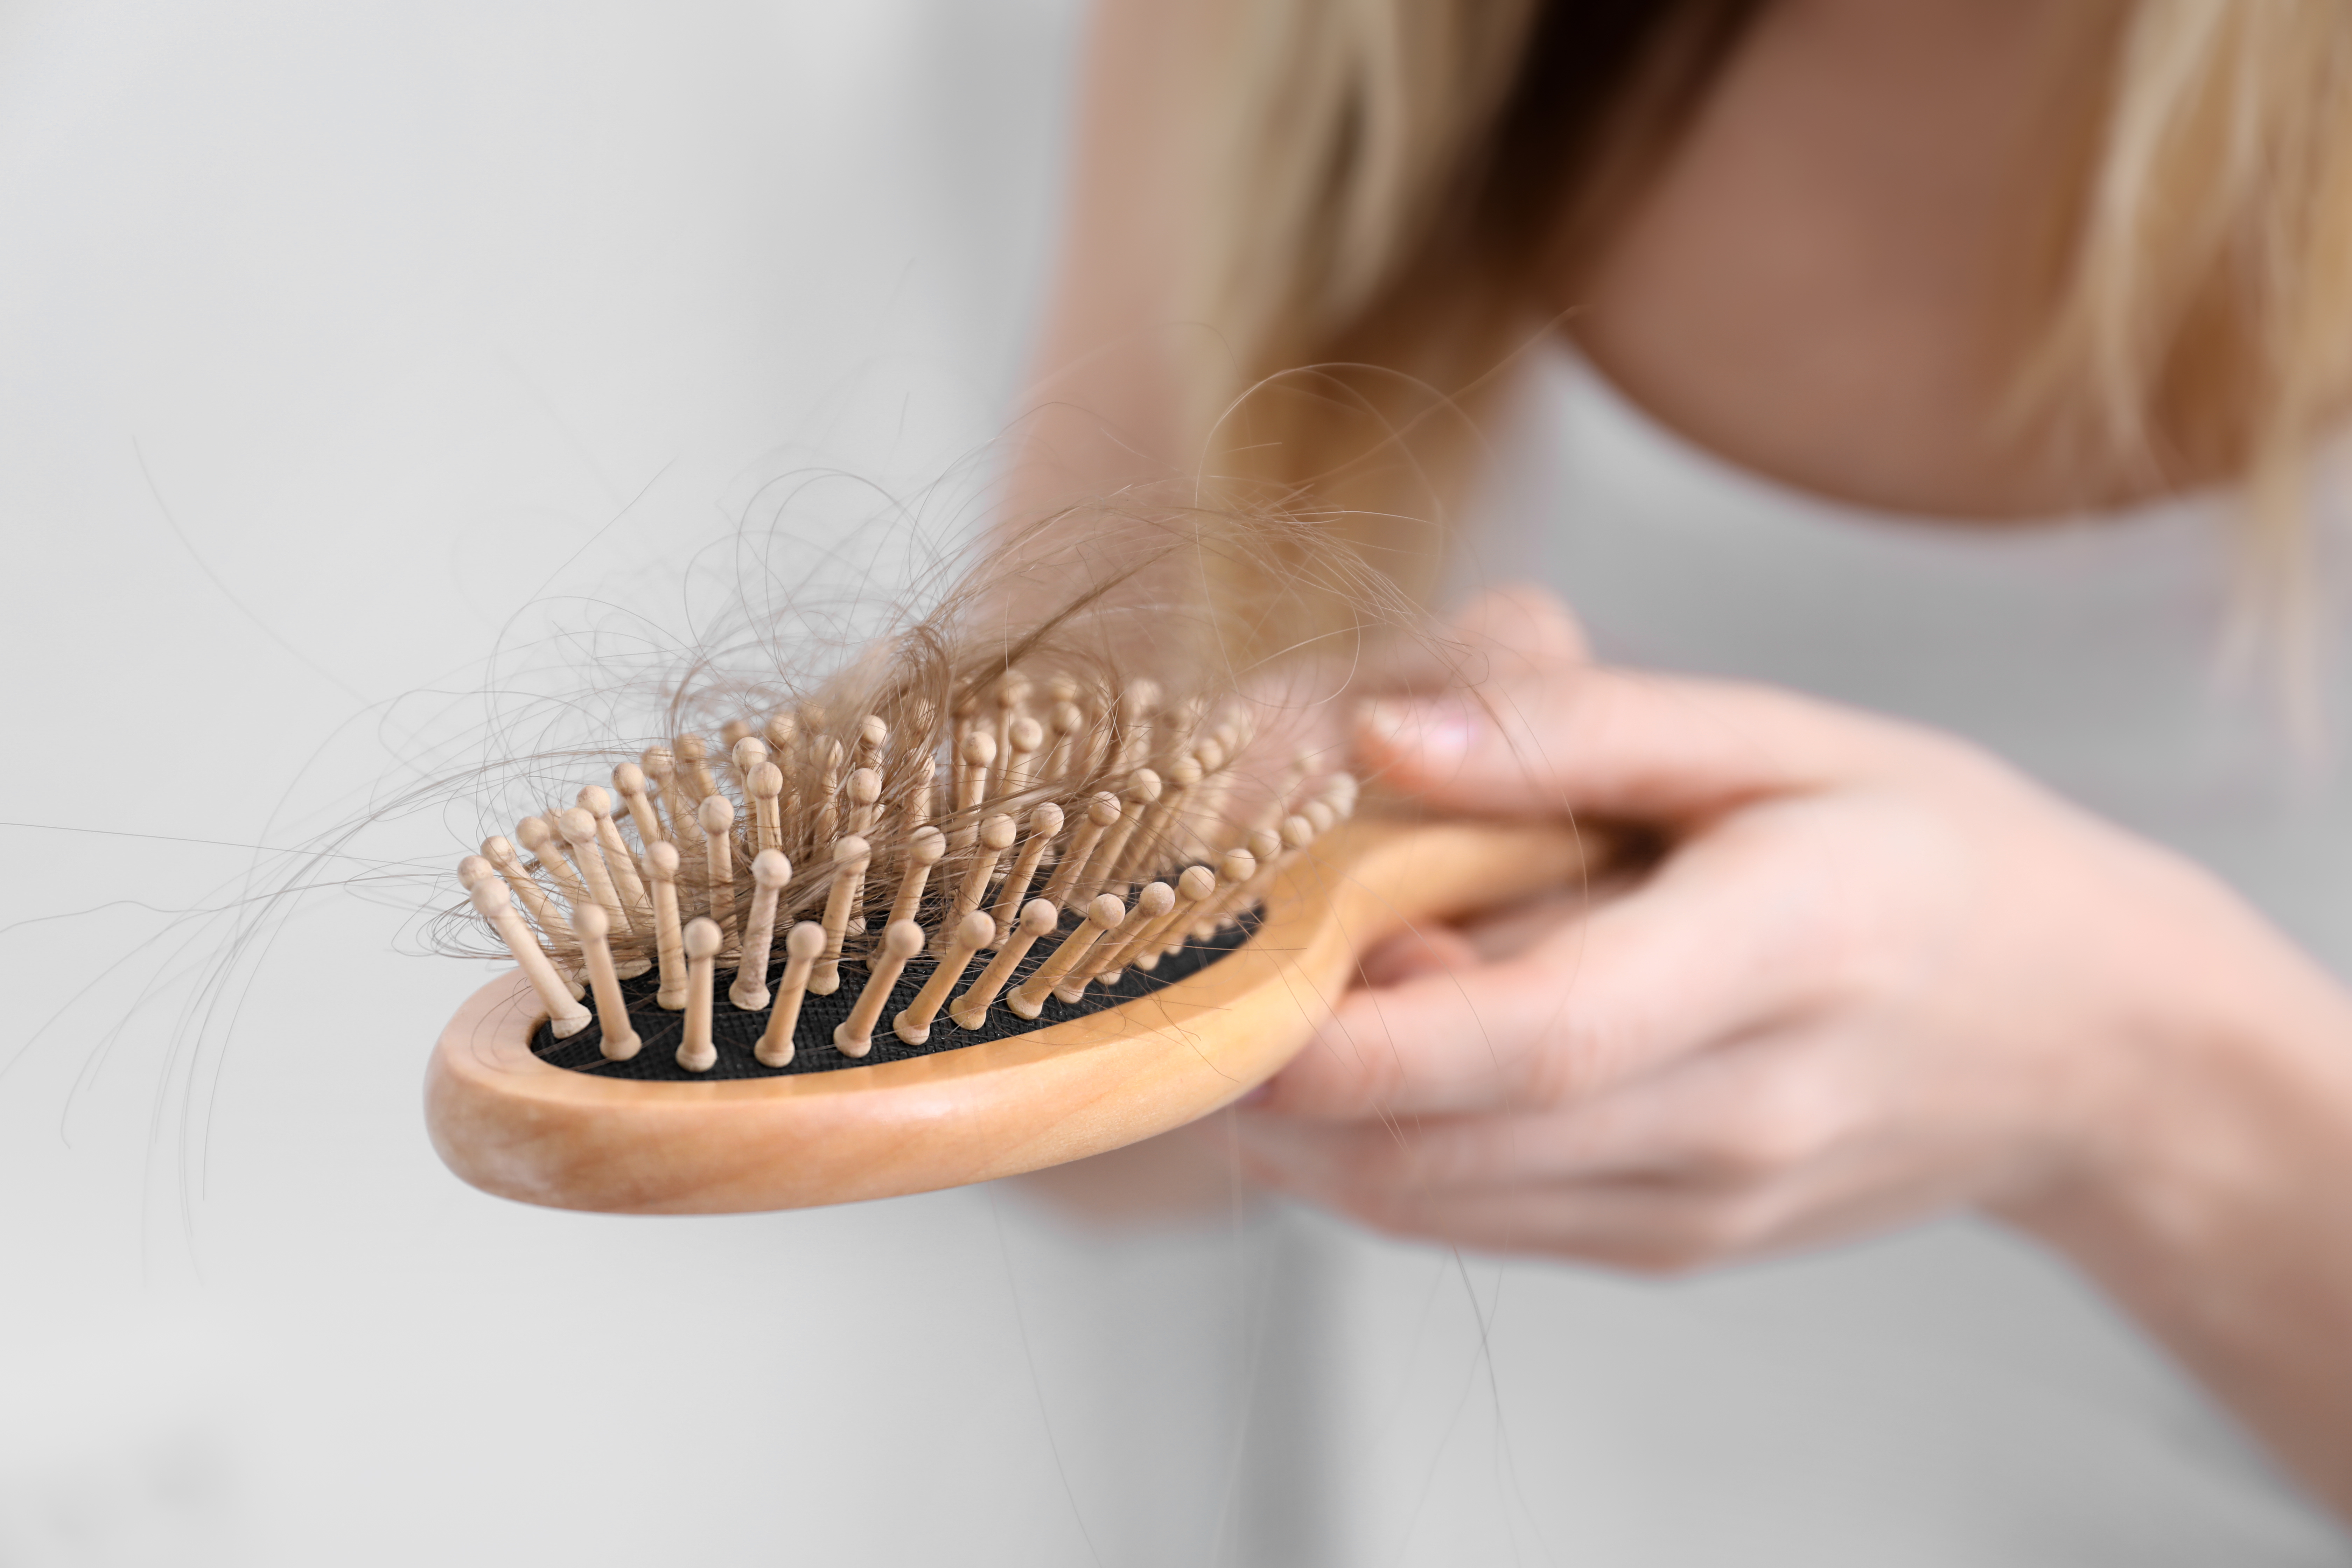 Chez les femmes, ce risque de perte de cheveux apparaît en effet associé à la baisse des niveaux d'œstrogène pendant la période de transition vers la ménopause, mais pas seulement (Visuel Adobe Stock 240839013). 